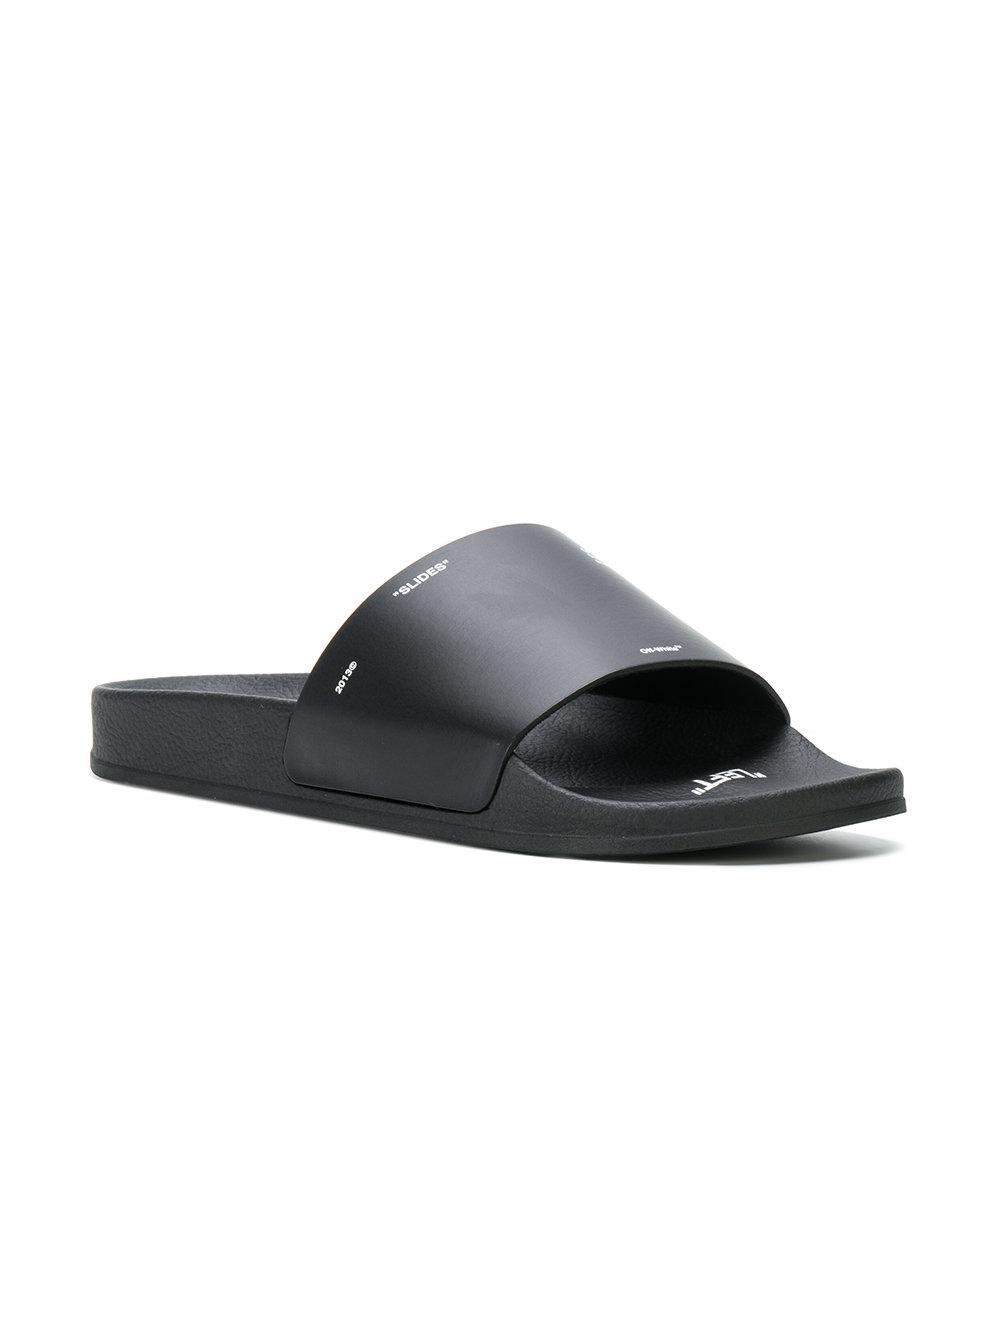 slides and flip flops Save 38% Off-White c/o Virgil Abloh Rubber Industrial Belt Slides for Men Mens Shoes Sandals 